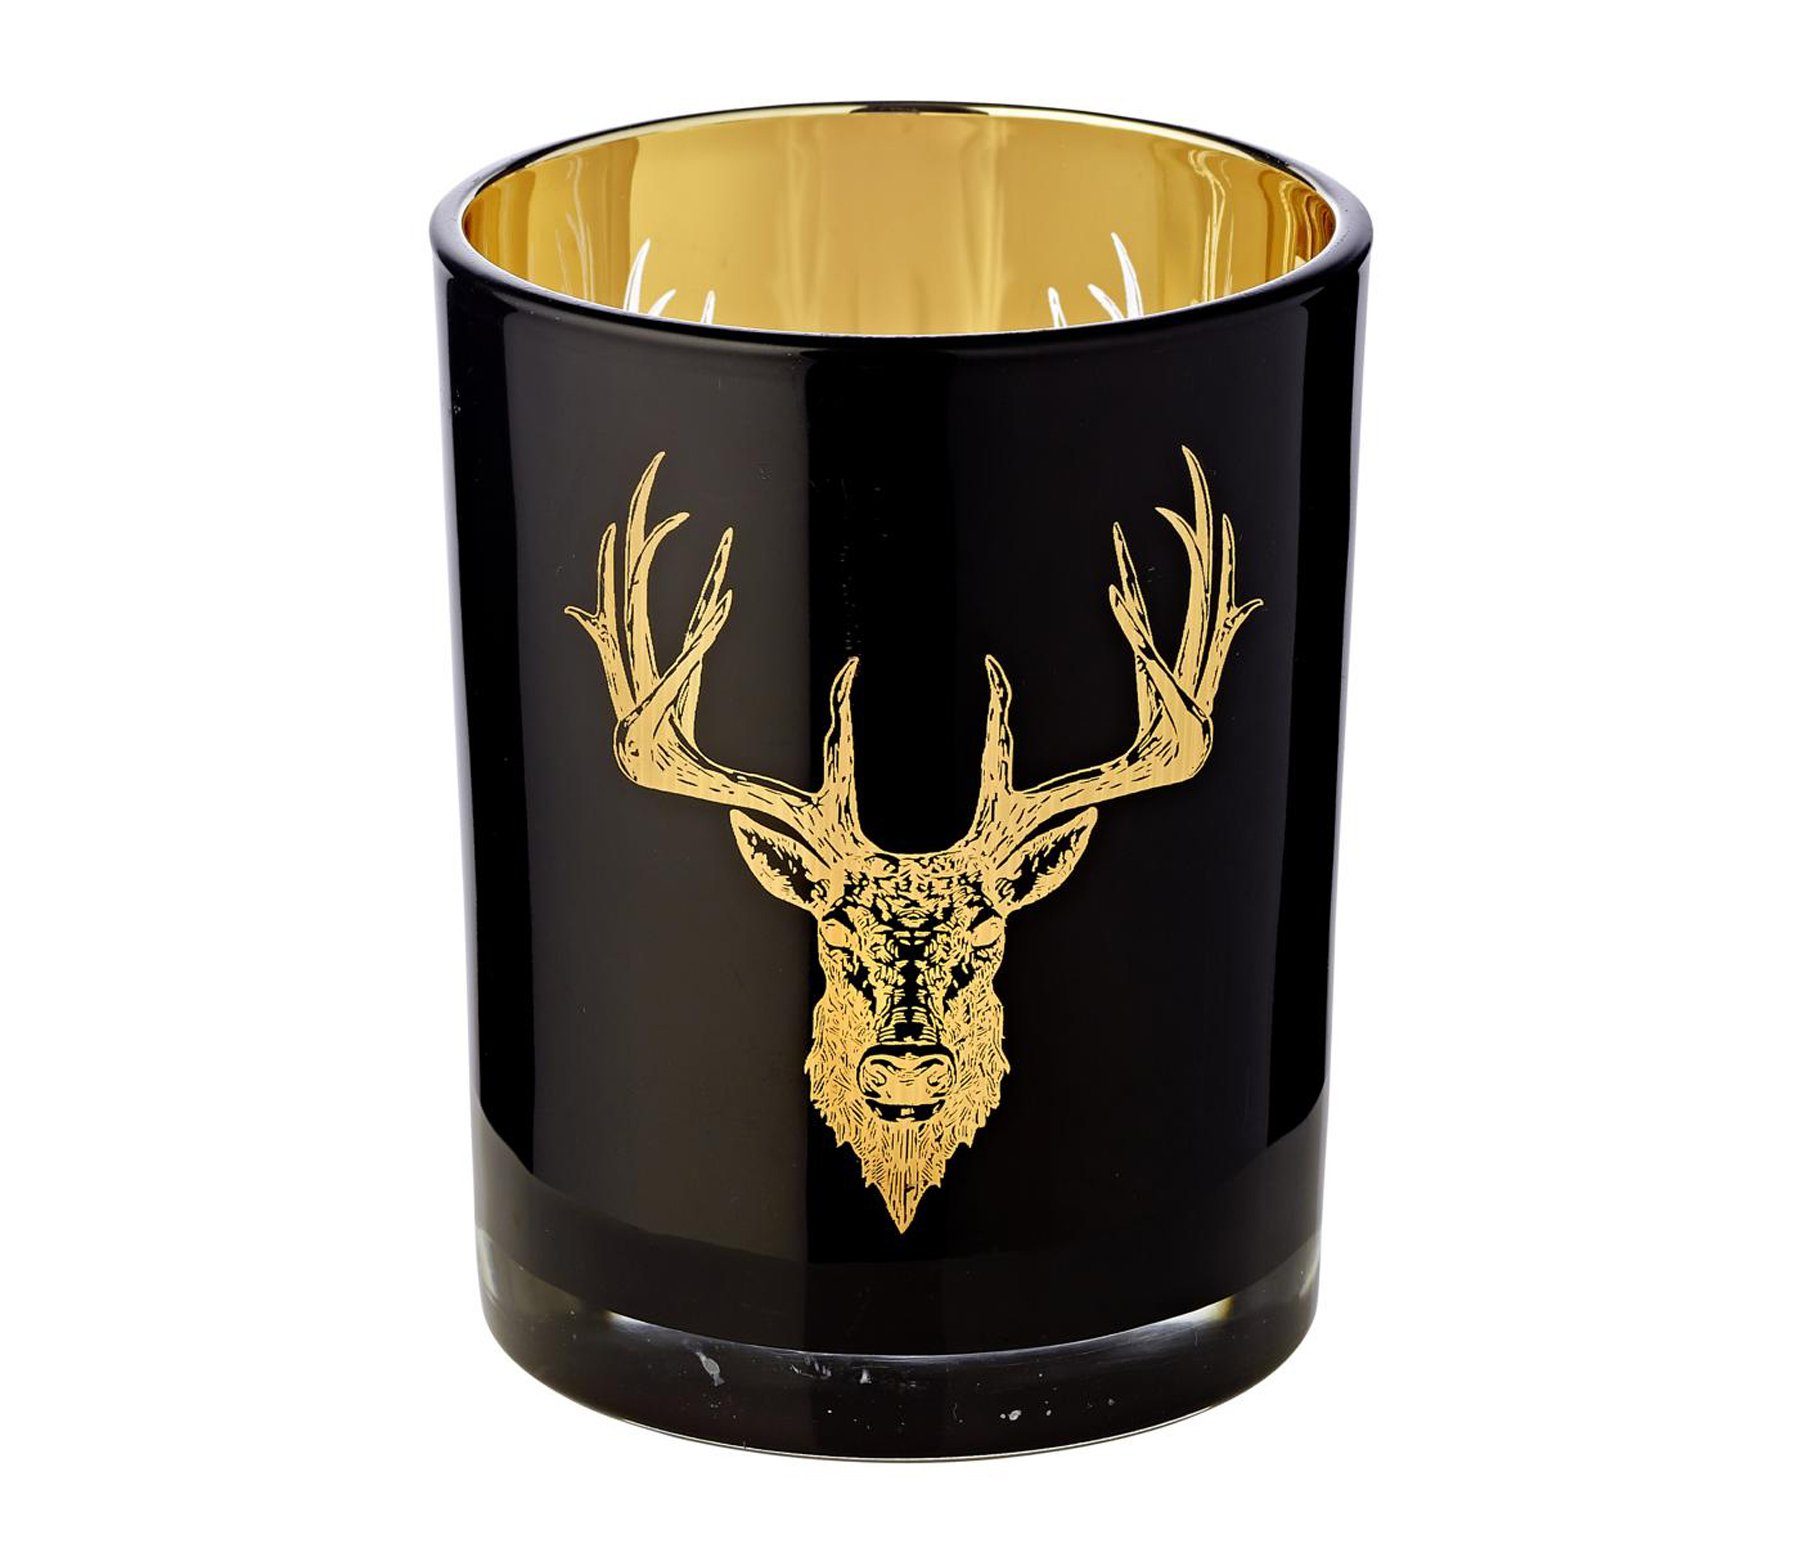 EDZARD Windlicht »Tom«, Kerzenglas mit Hirsch-Motiv in Gold-Optik,  Teelichtglas für Teelichter, Höhe 13 cm, Ø 10 cm online kaufen | OTTO